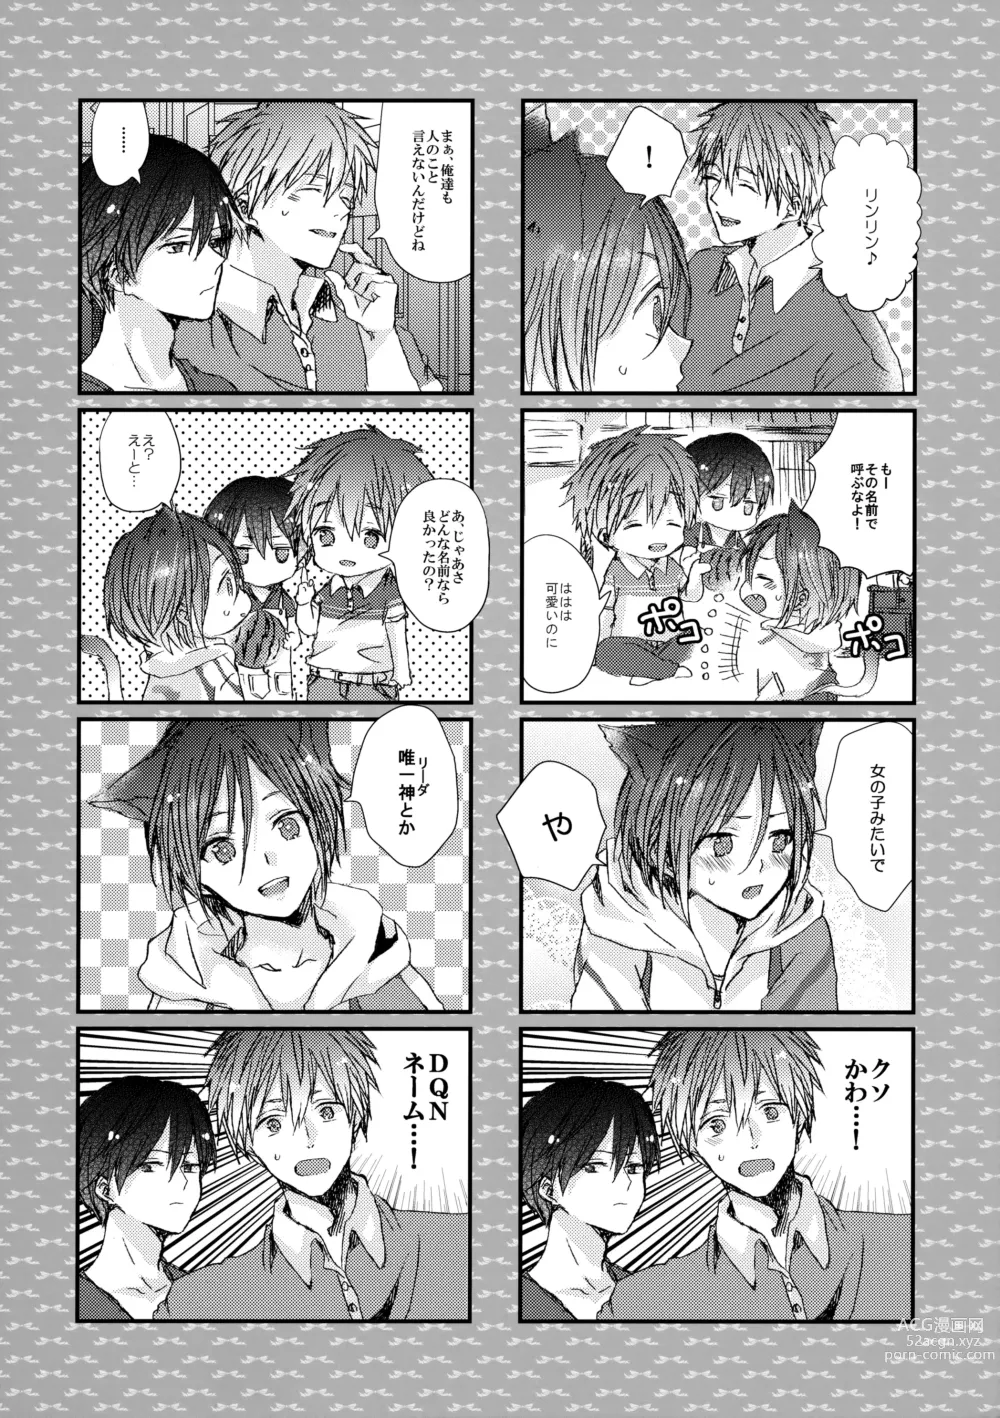 Page 9 of doujinshi Rin-chan nau!